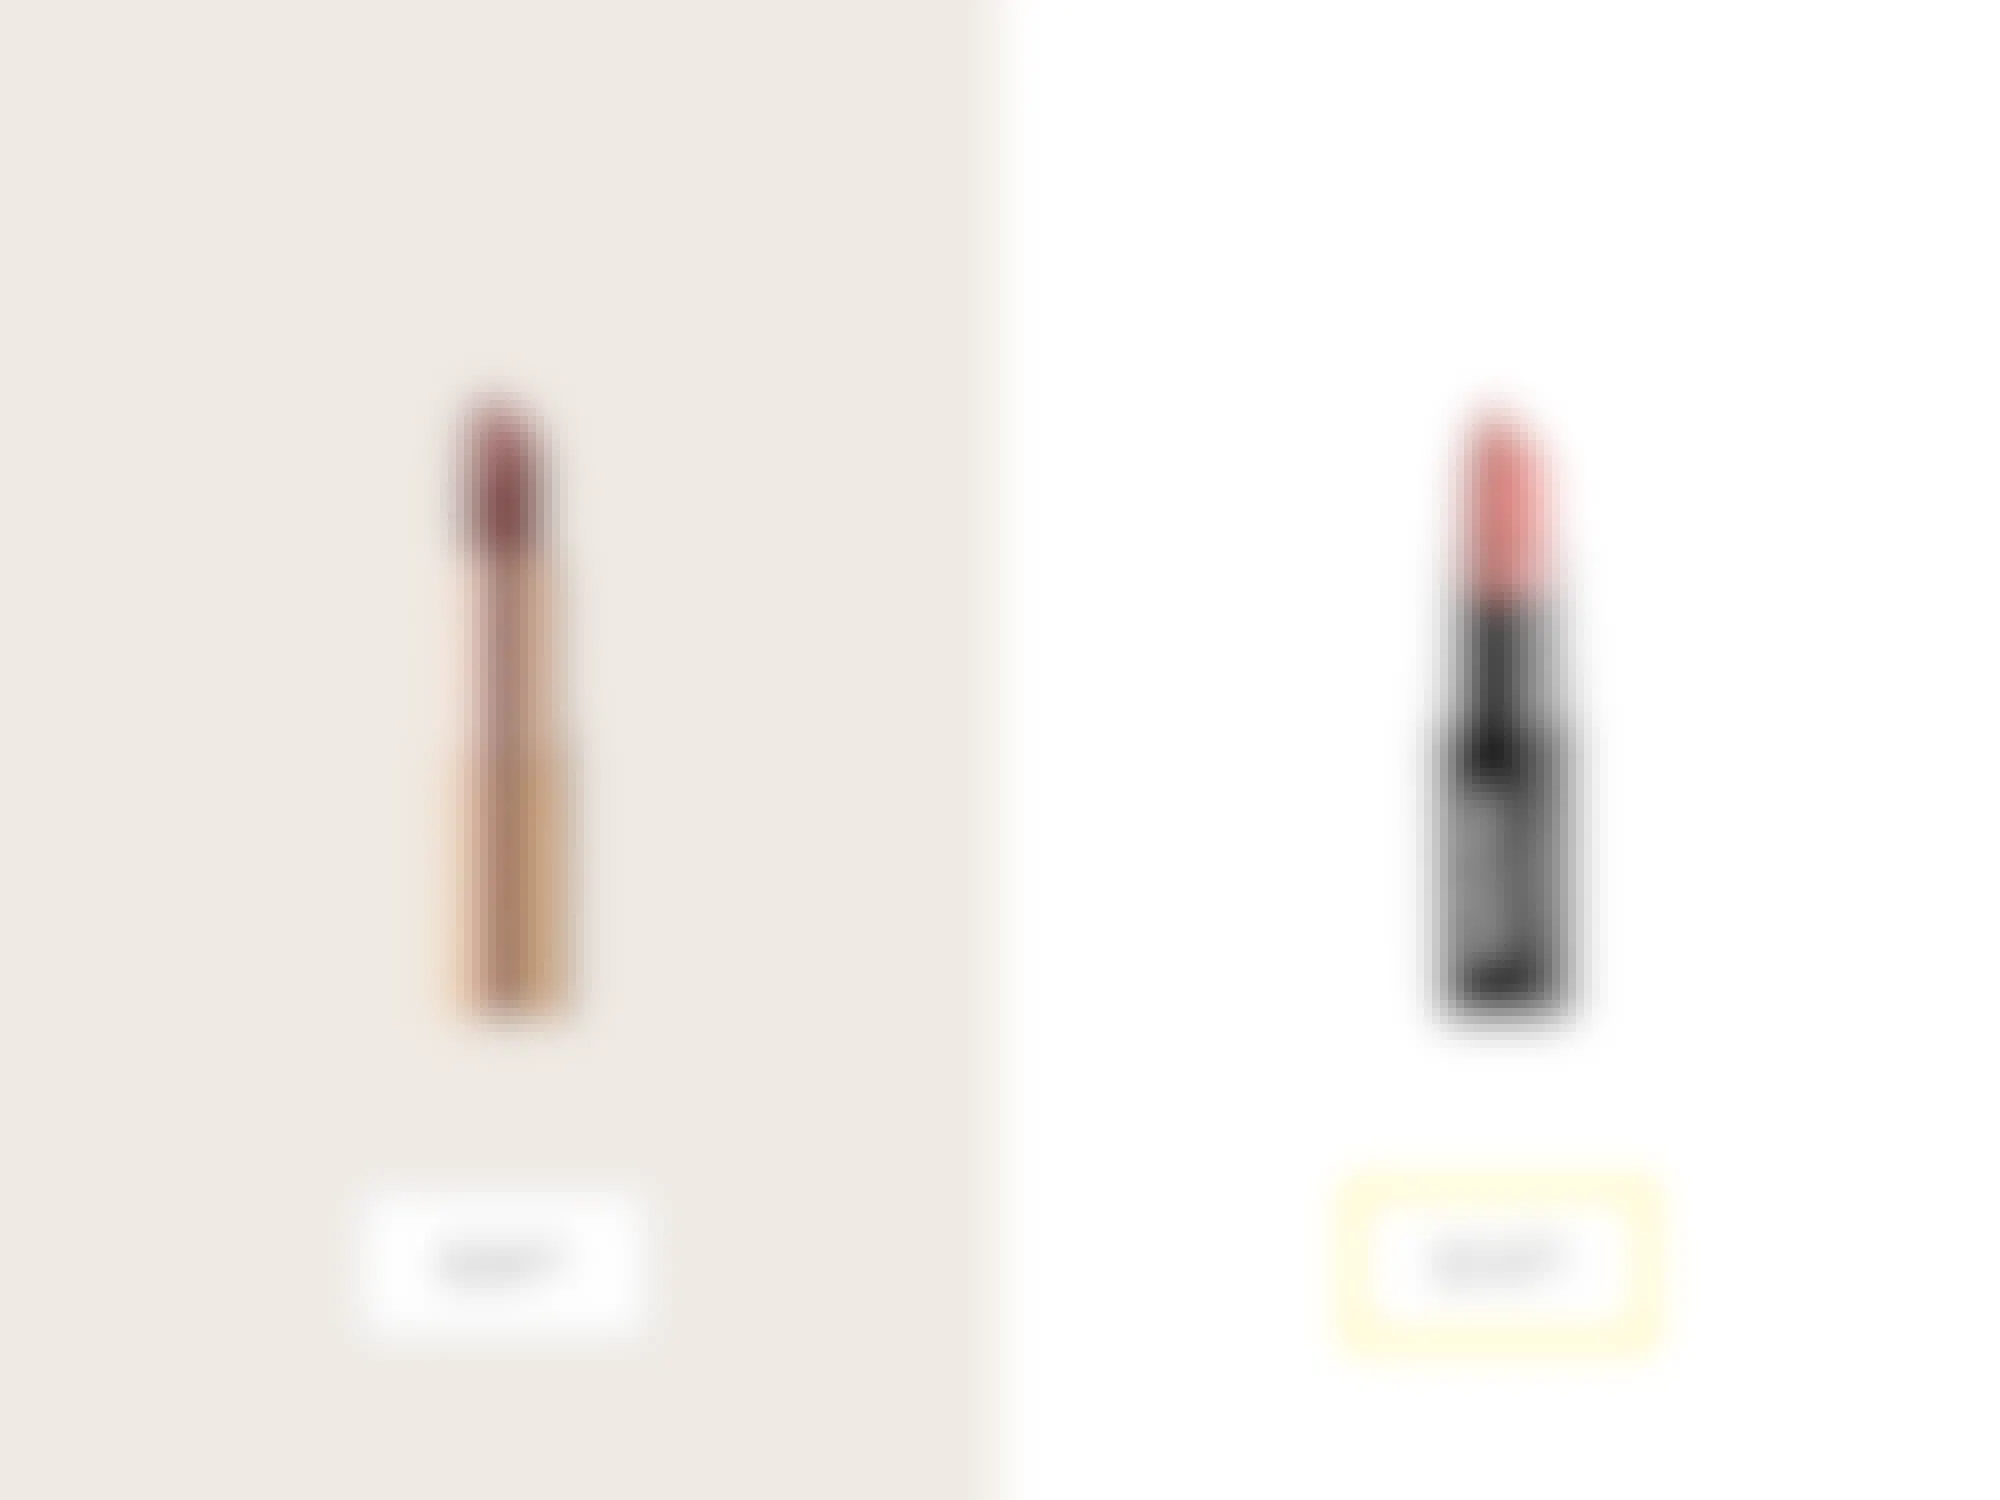 charlotte tilbury pillow talk and nyx matte lipstick in euro trash price comparison graphic